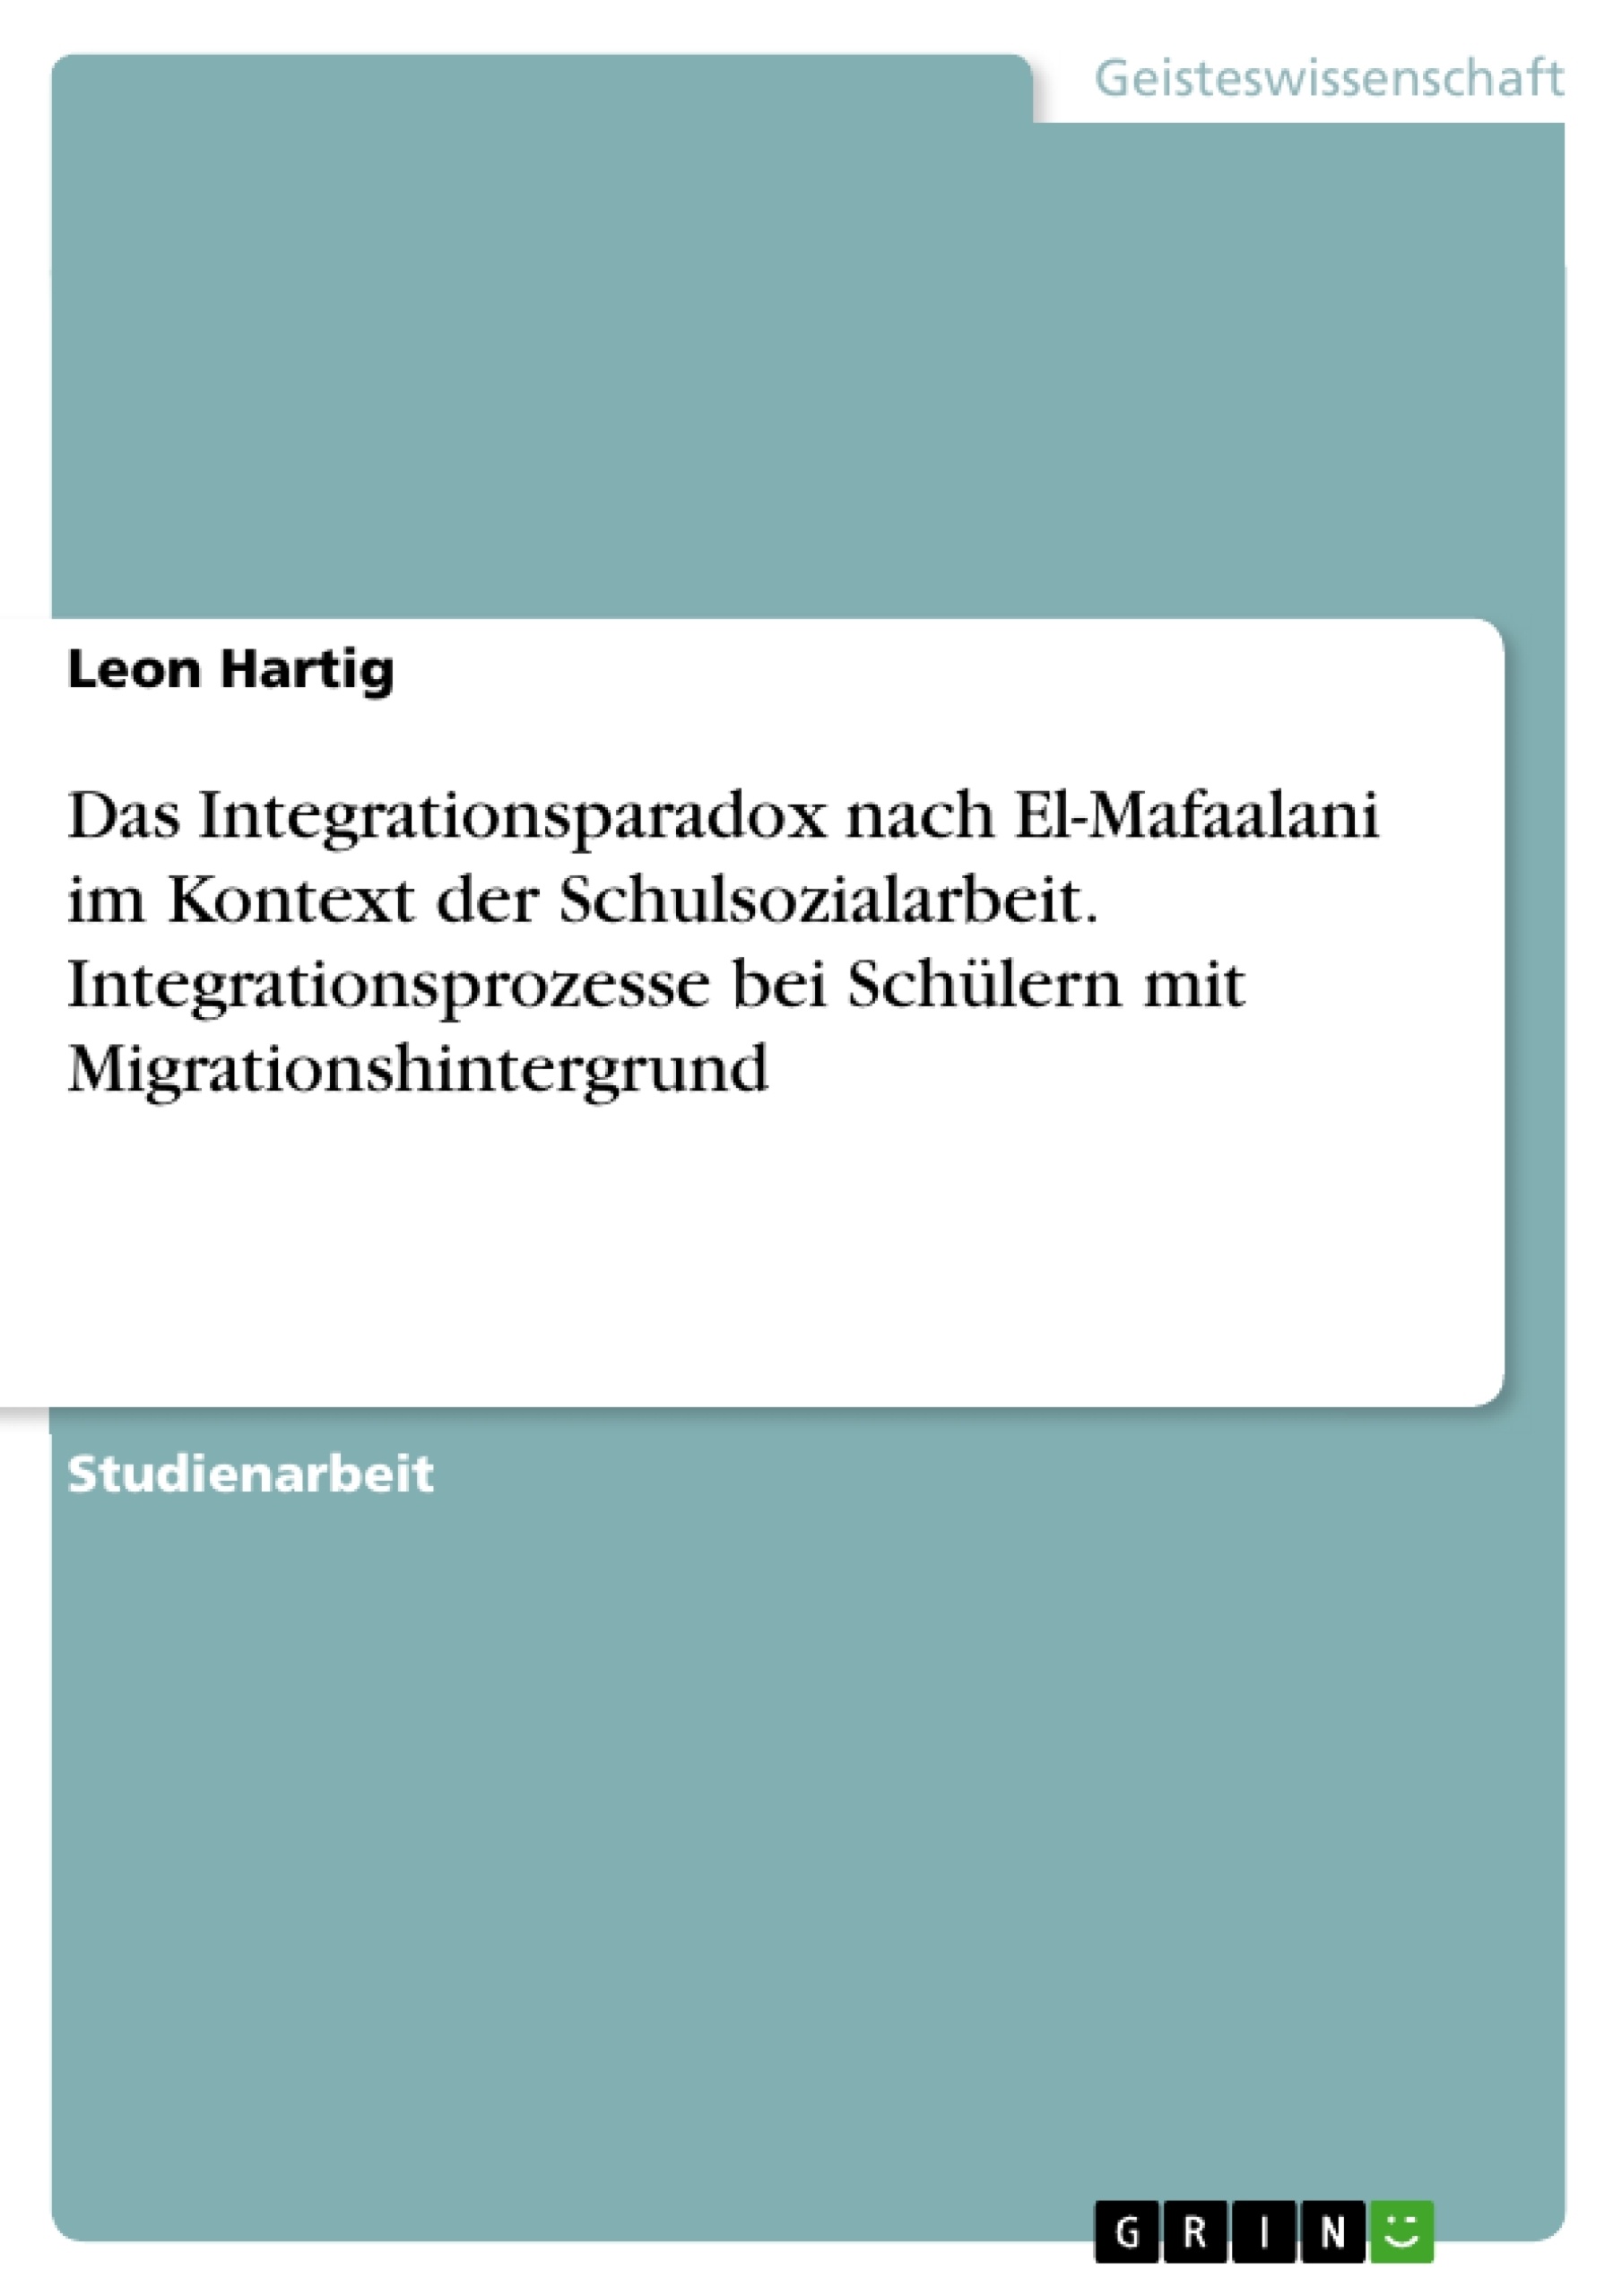 Título: Das Integrationsparadox nach El-Mafaalani im Kontext der Schulsozialarbeit. Integrationsprozesse bei Schülern mit Migrationshintergrund